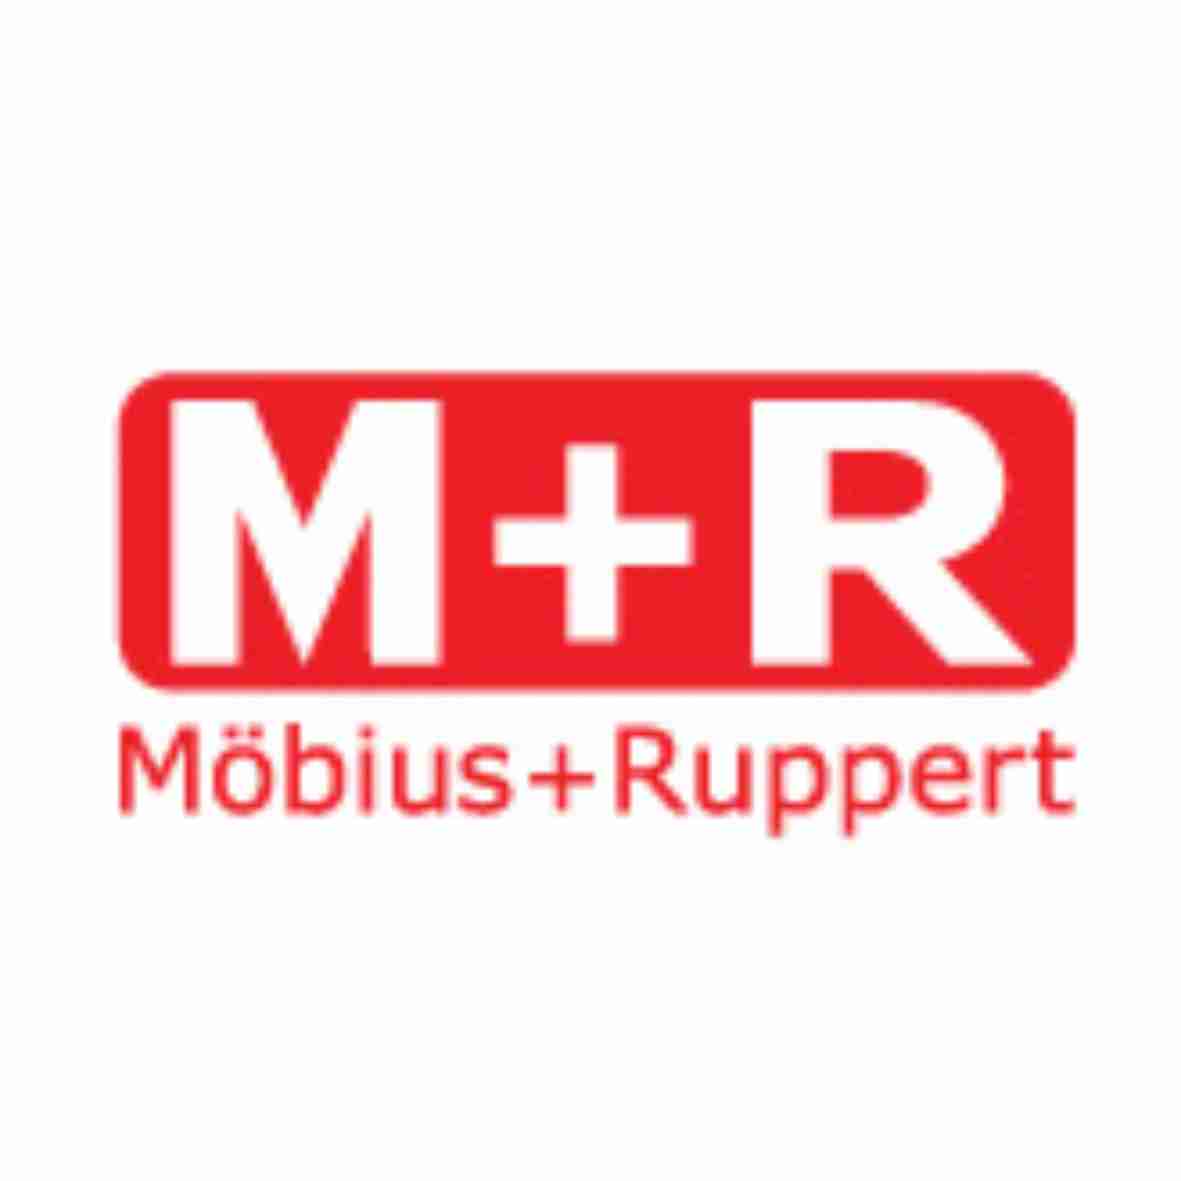 MOBIUS&RUPPERT